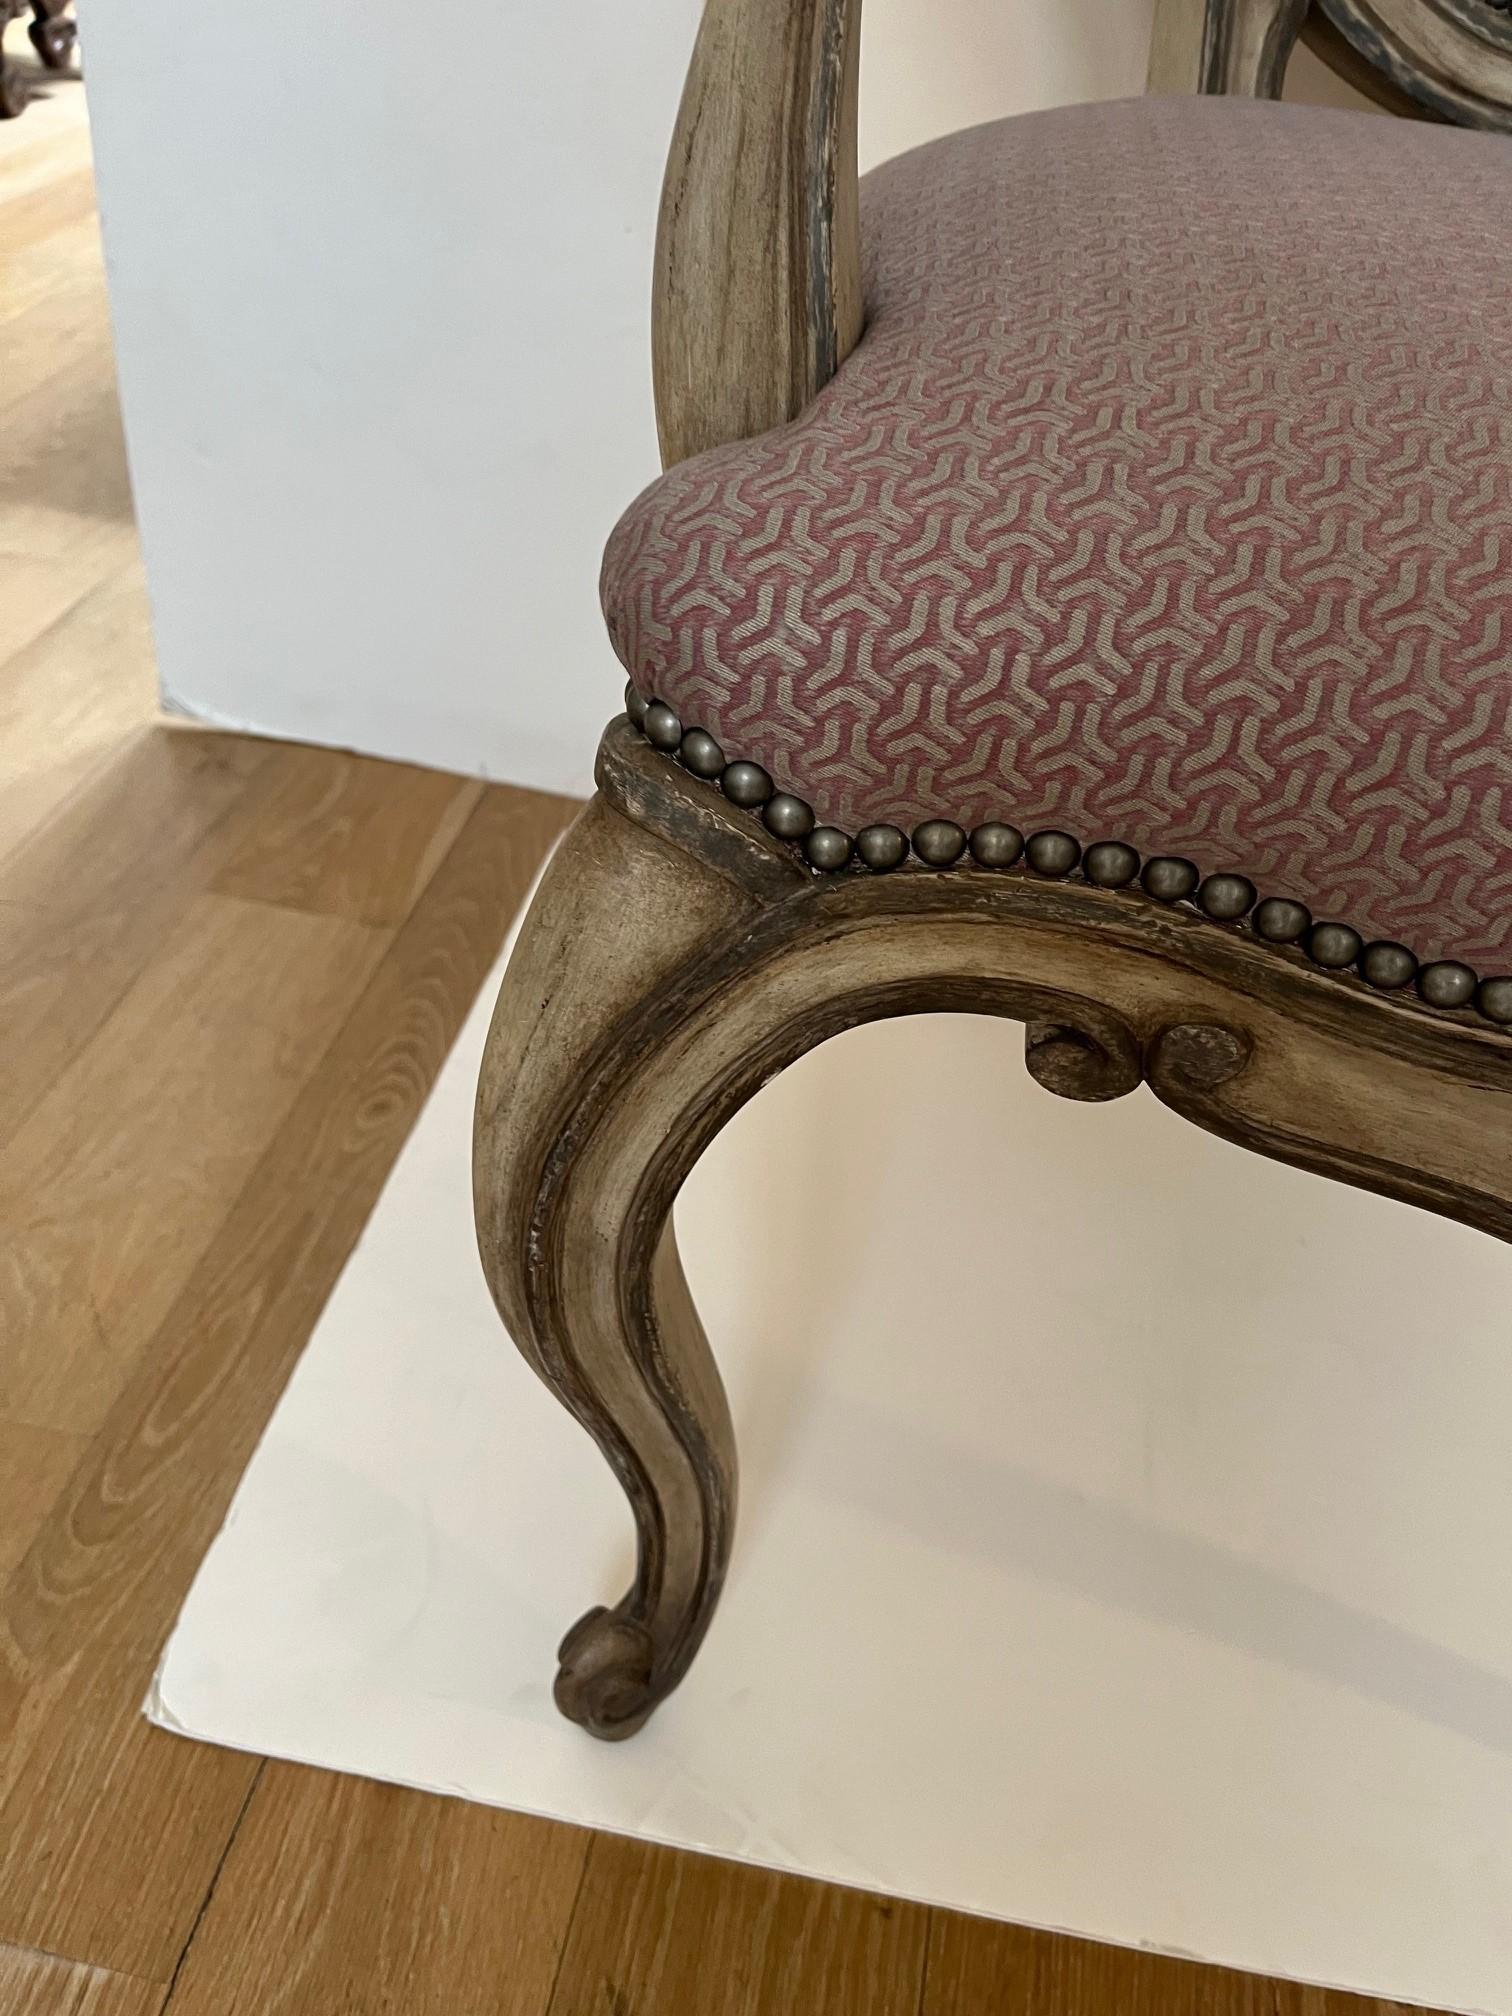 Fauteuil de salle à manger de style Louis XV, tapissé de tissus Fortuny, avec garniture de têtes de clous en laiton antique à l'assise et à l'intérieur du dossier ovale et de l'accoudoir, finition peinte à l'ancienne, cadre de chaise en bois